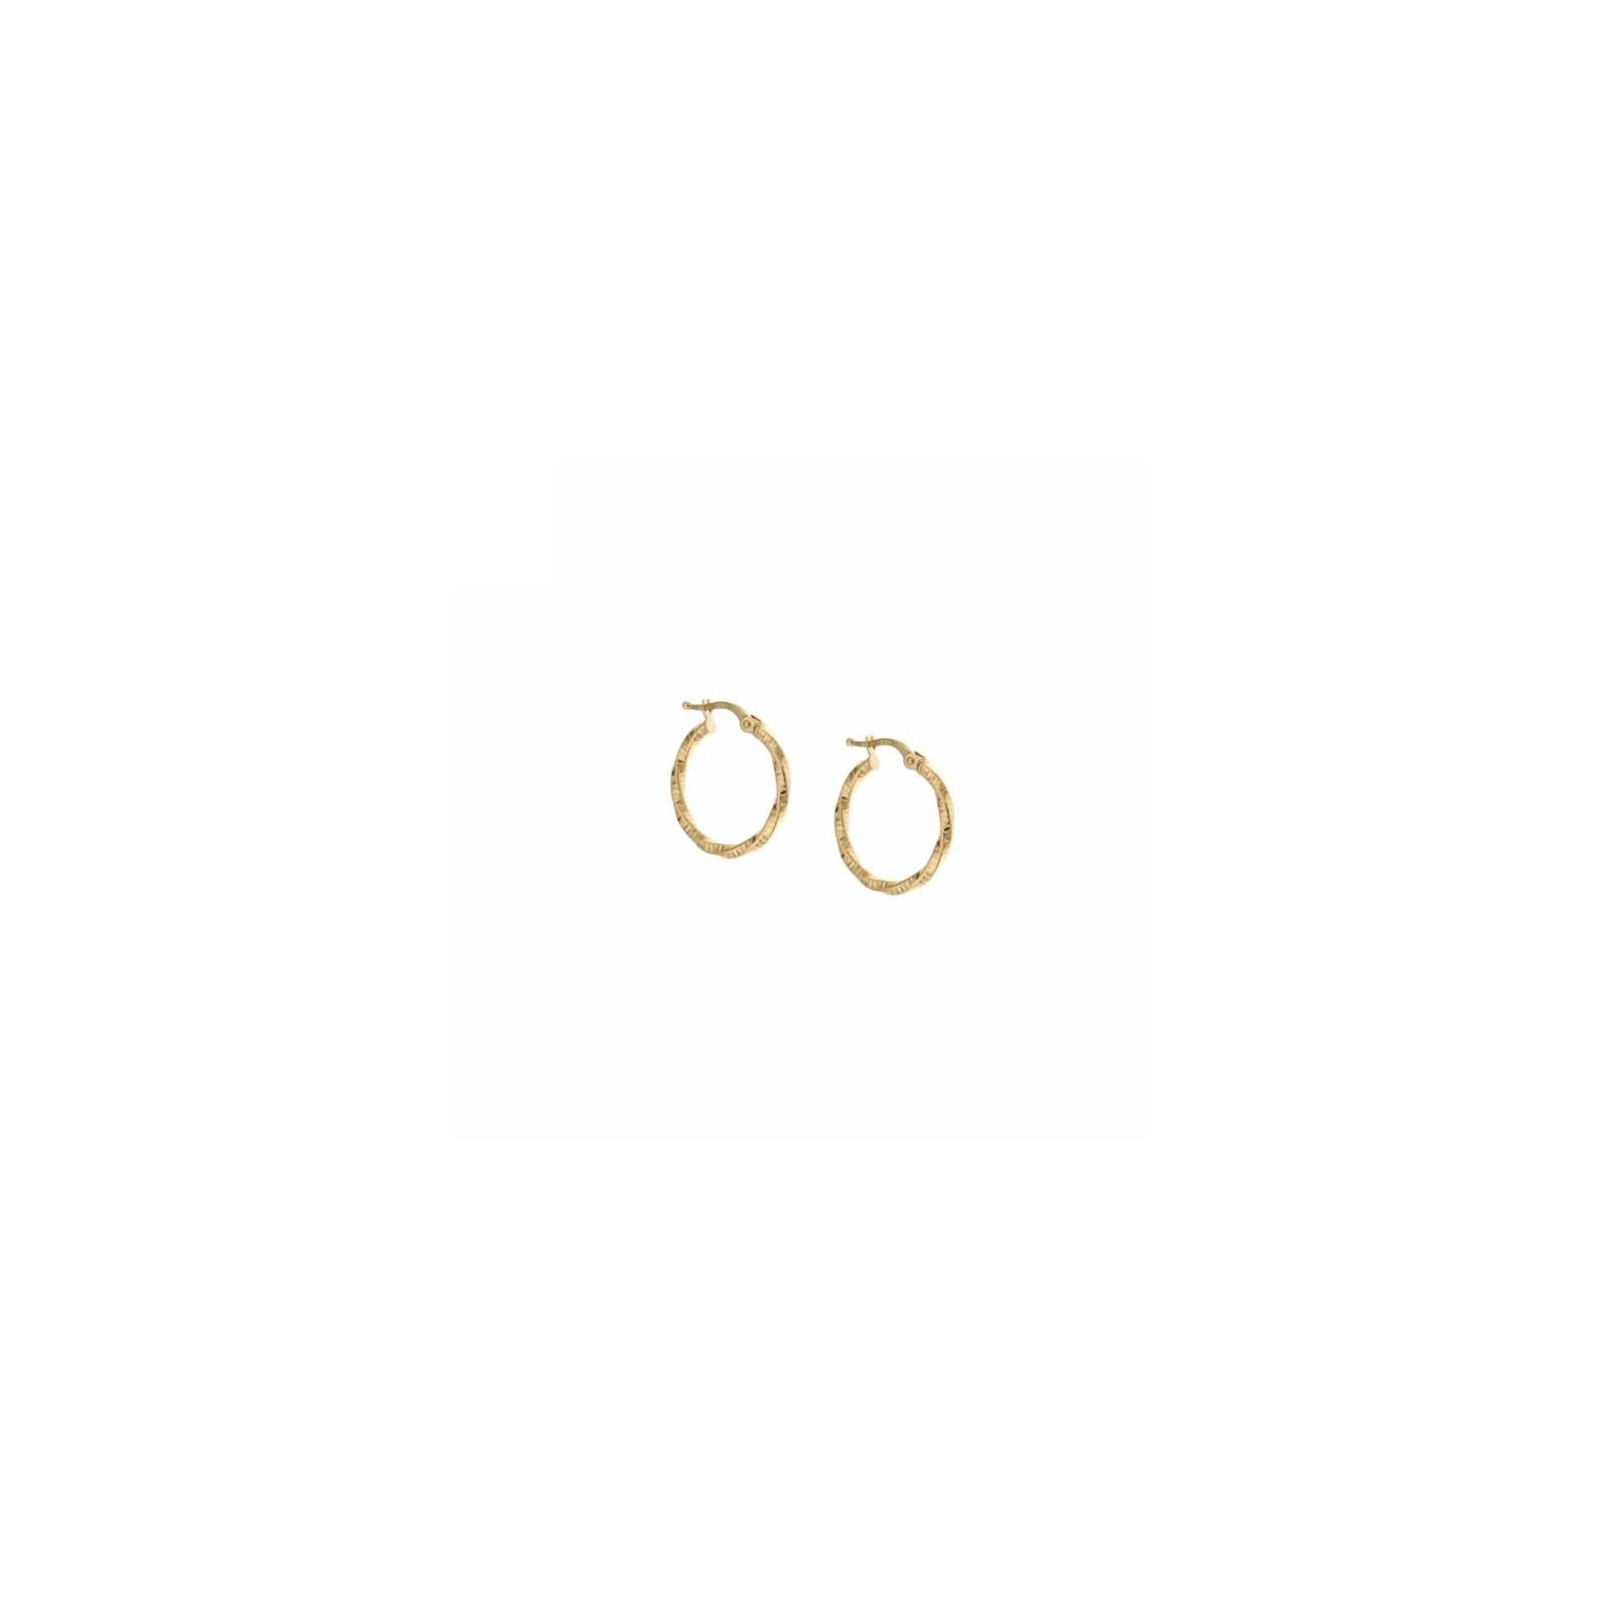 cerchietti treccia in oro 750 (2 cm)